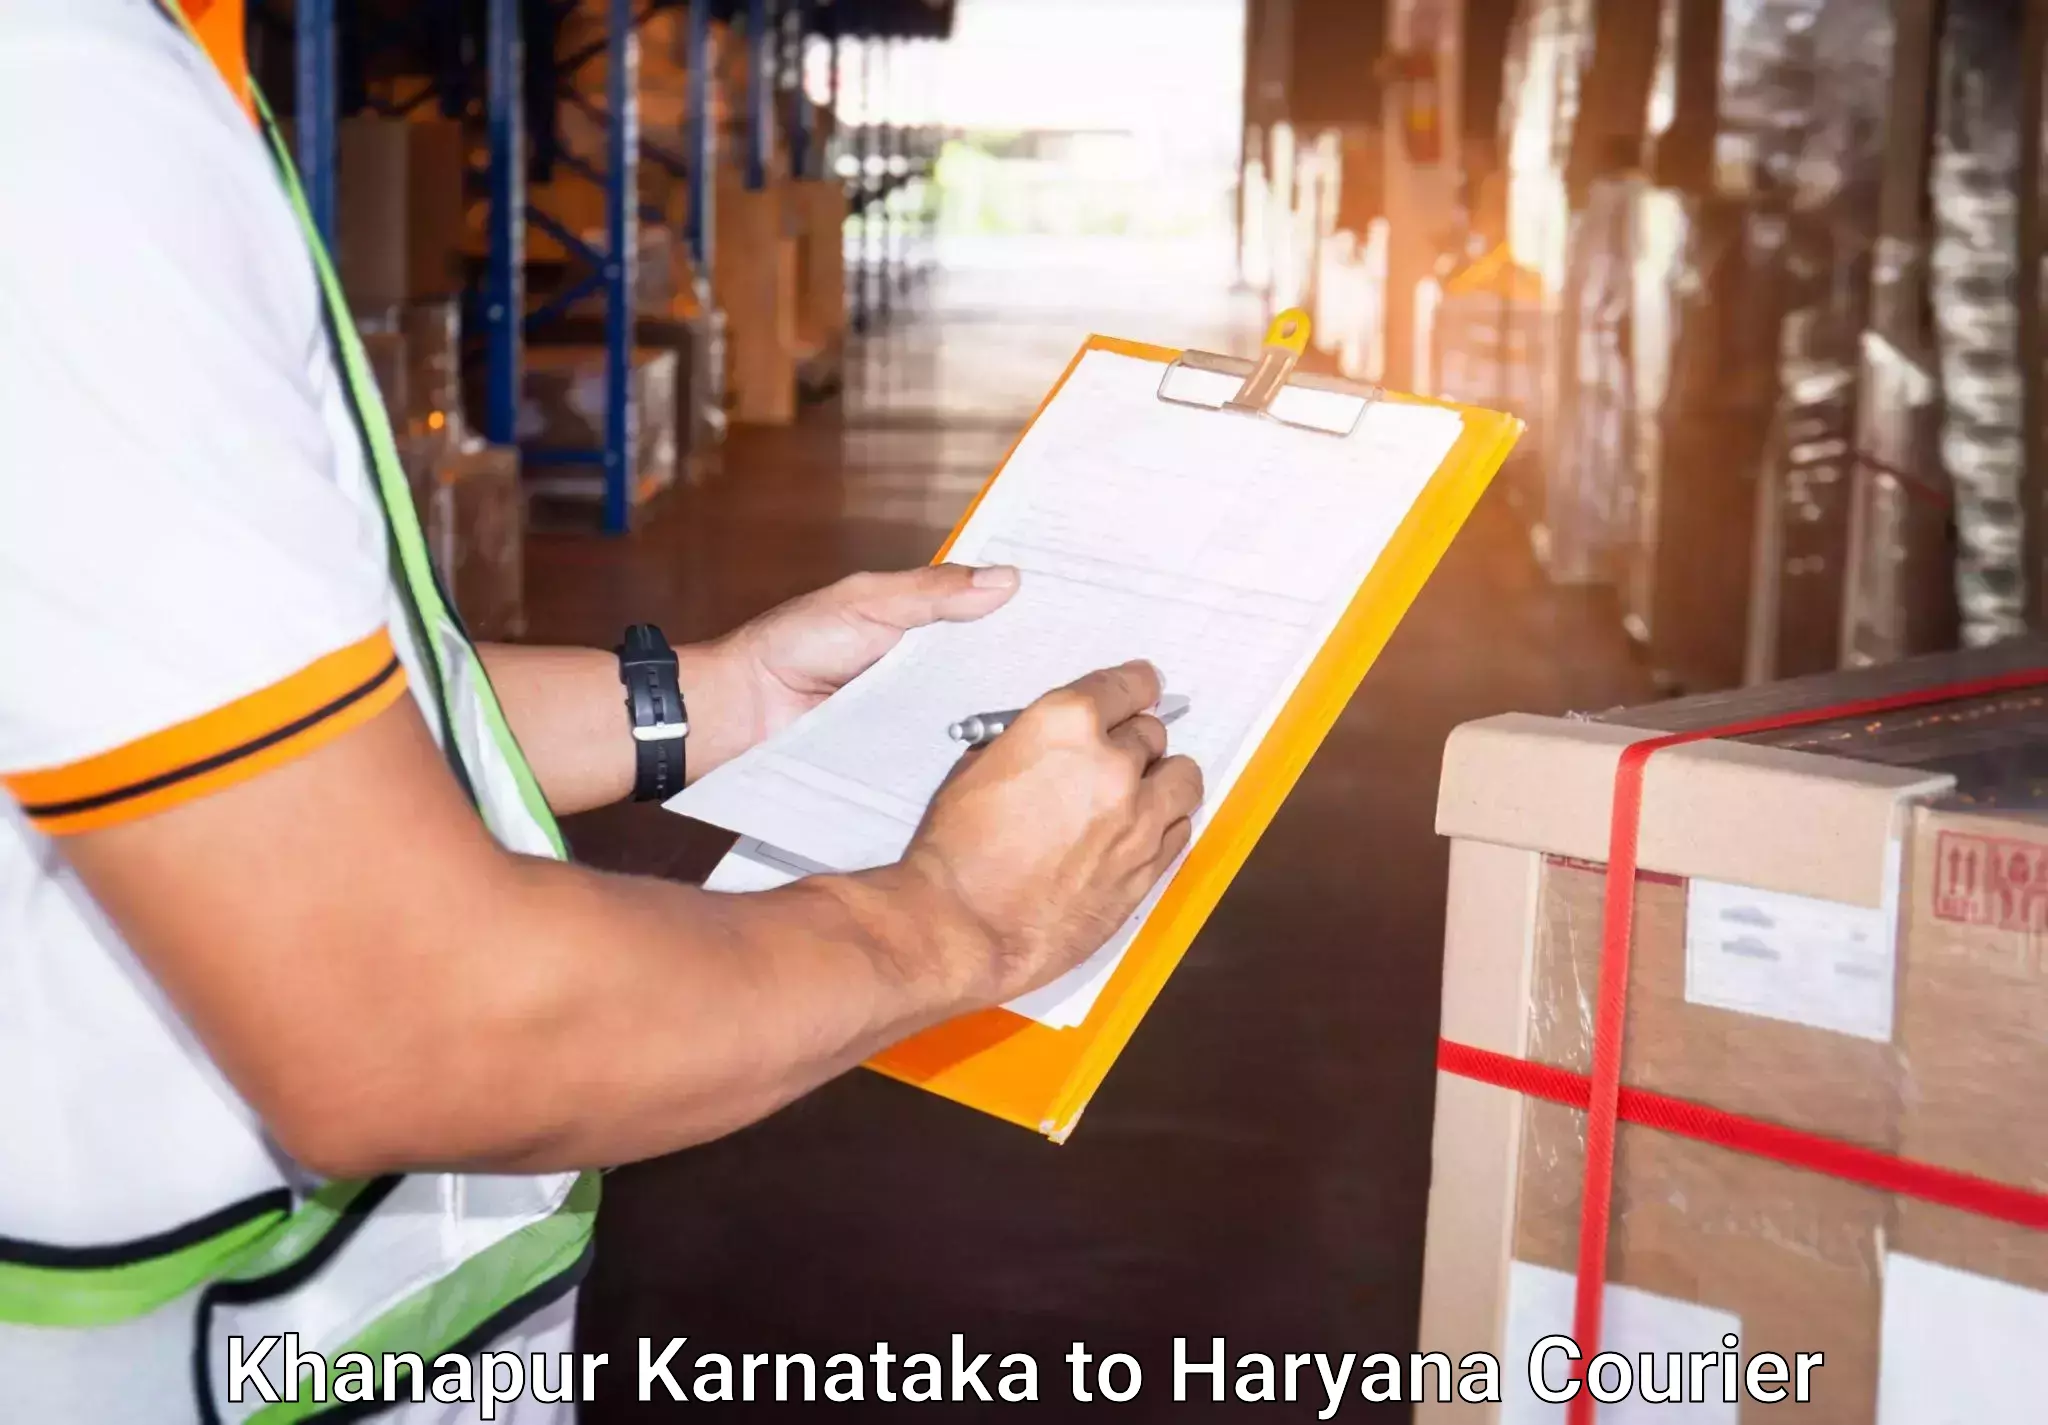 Baggage transport technology Khanapur Karnataka to NIT Kurukshetra